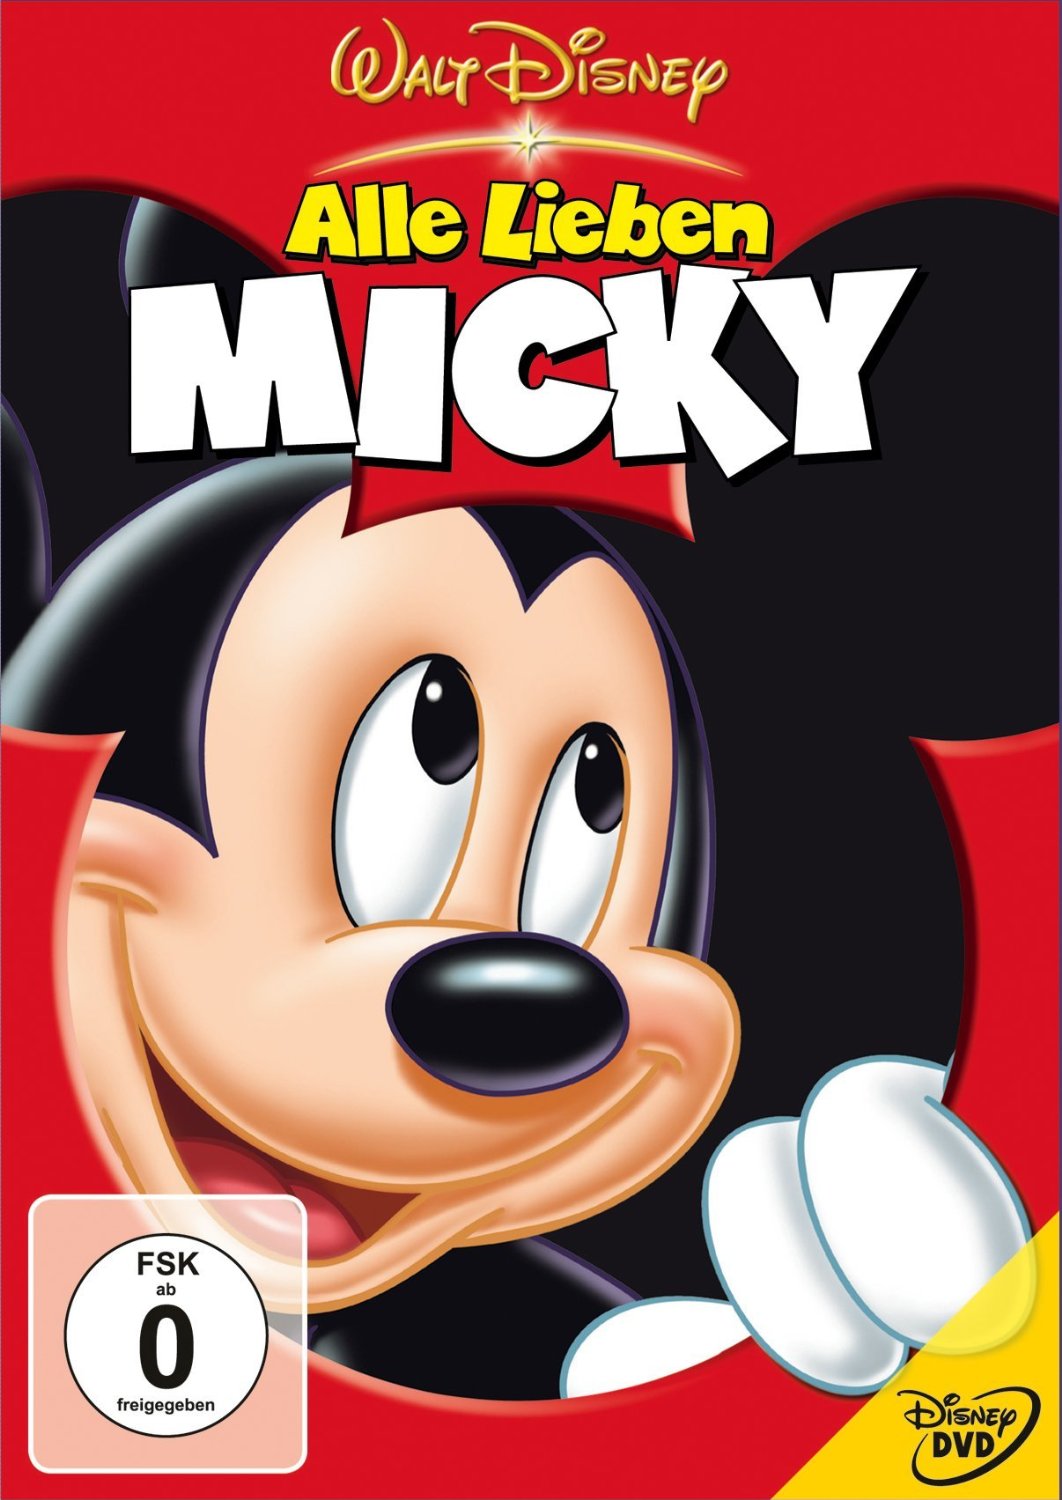 ihr-uncut-dvd-shop-alle-lieben-mickey-dvds-blu-ray-online-kaufen